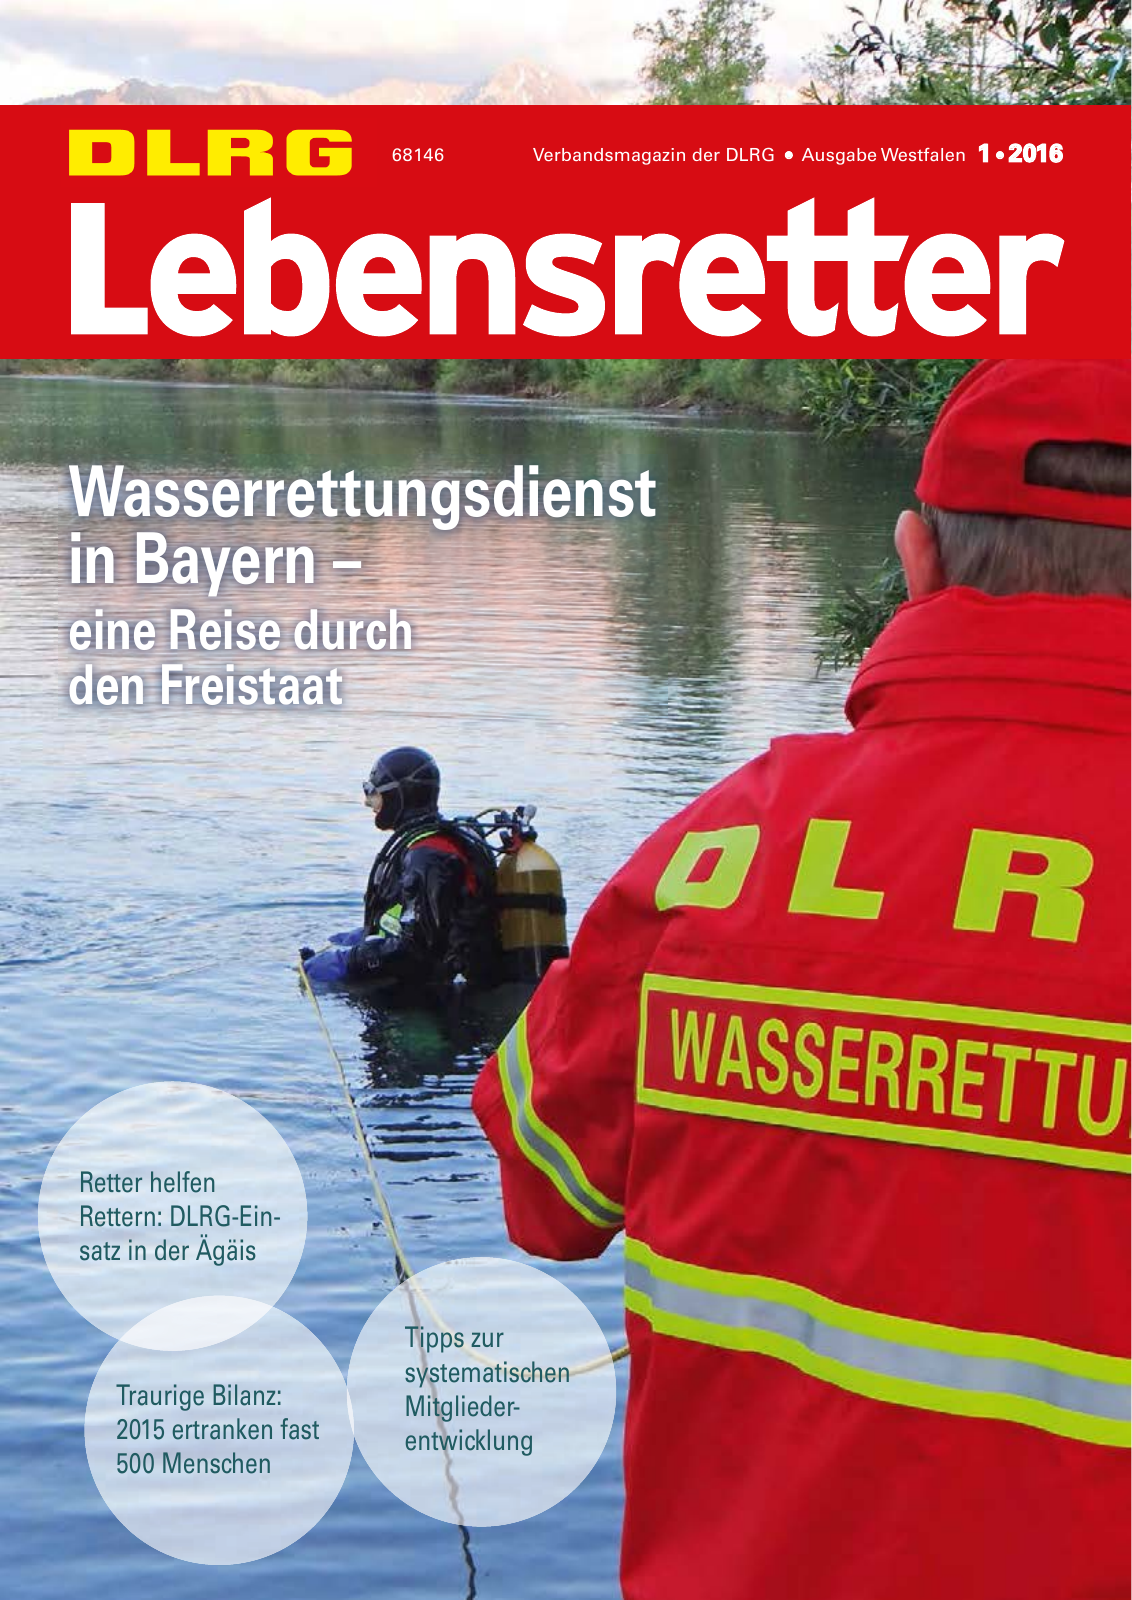 Vorschau Lebensretter 1/2016 - Regionalausgabe Westfalen Seite 1